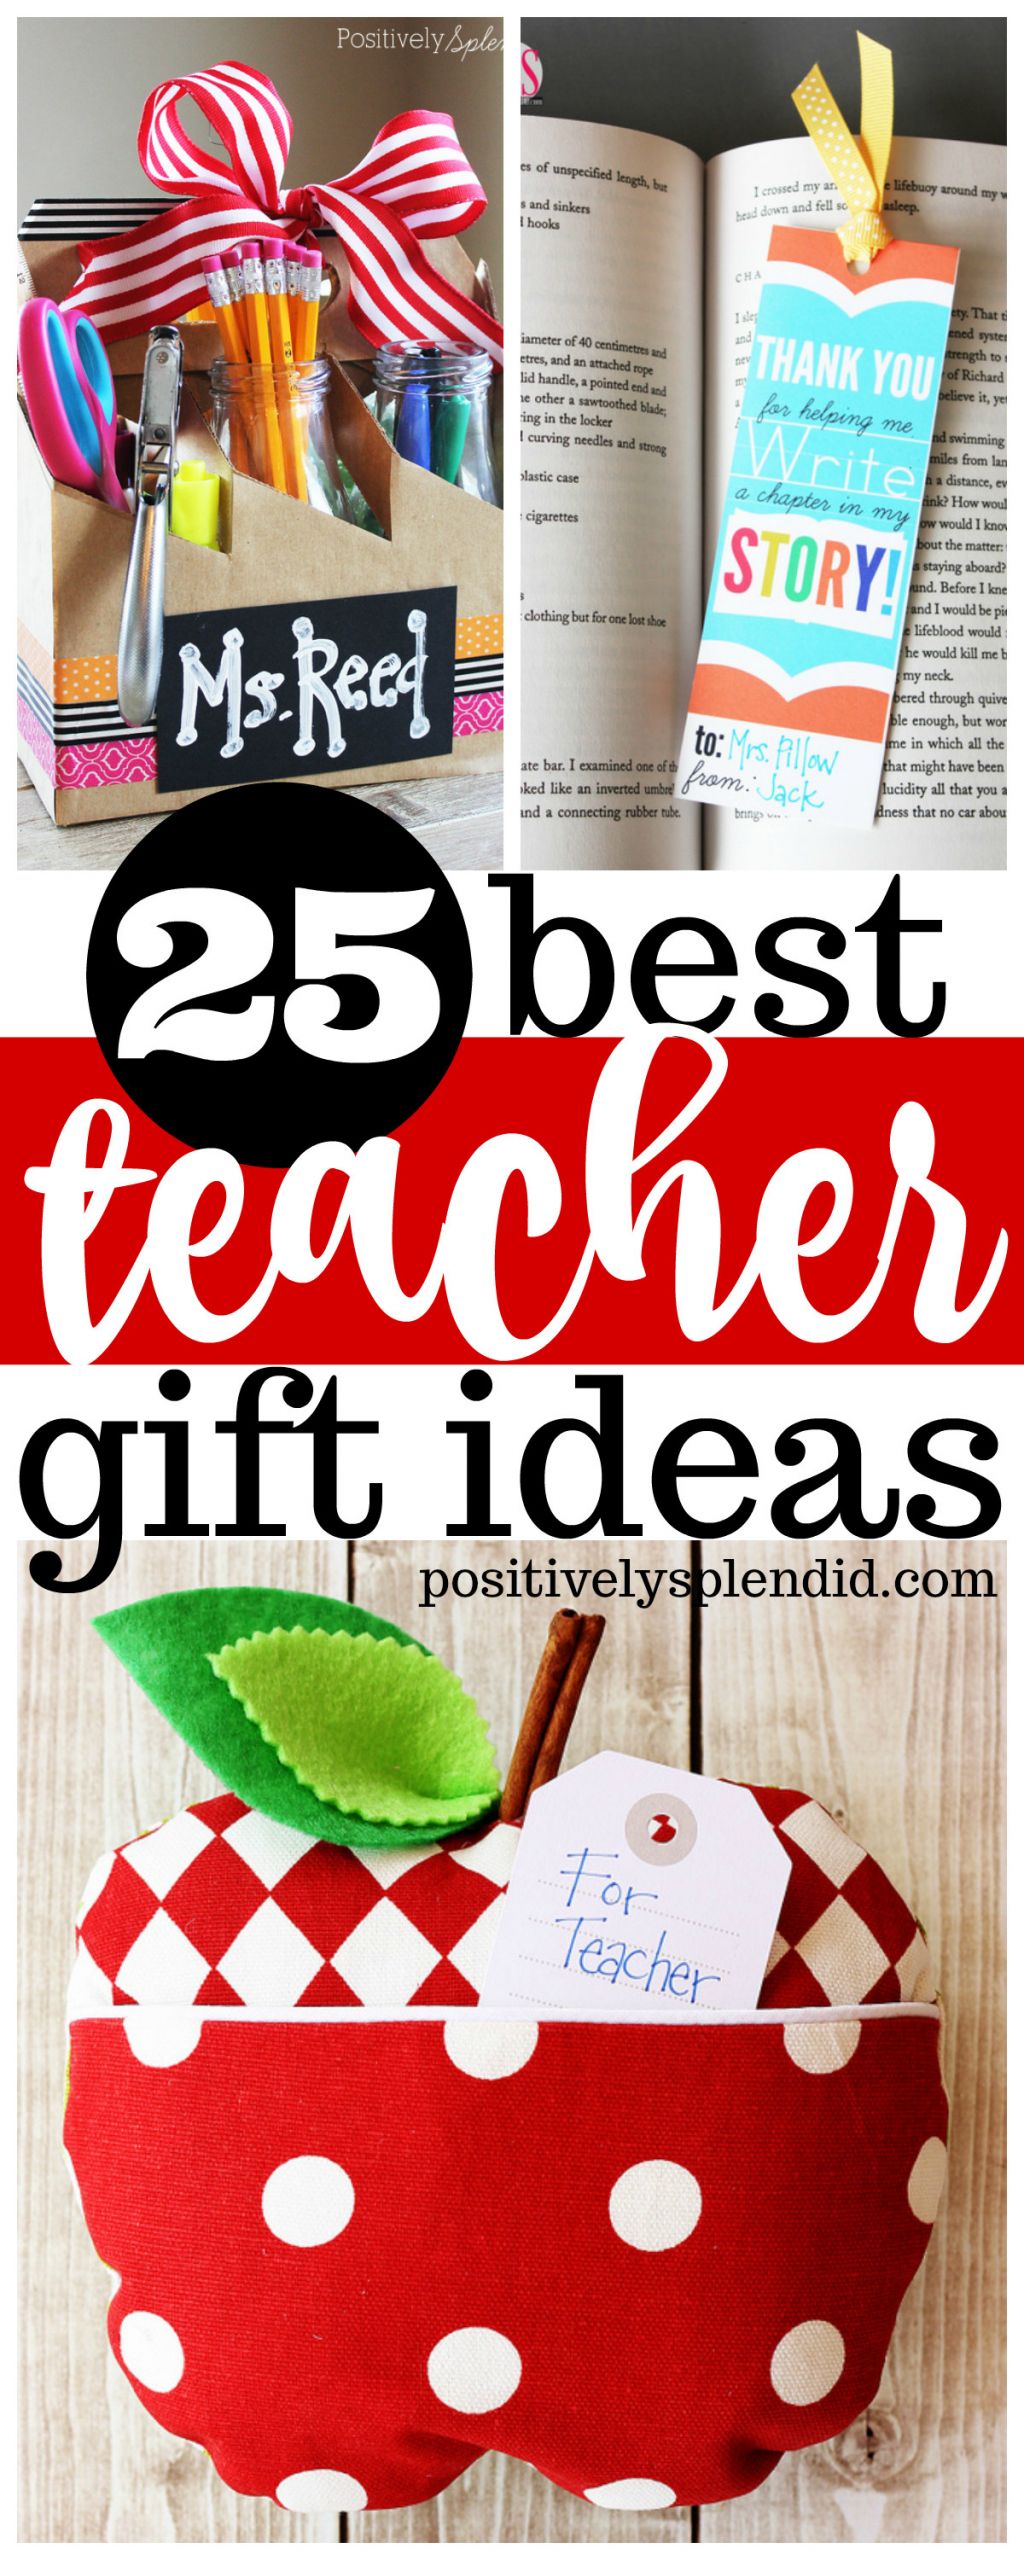 Best Teacher Gift Ideas
 25 Best Teacher Gift Ideas Unique handmade ideas